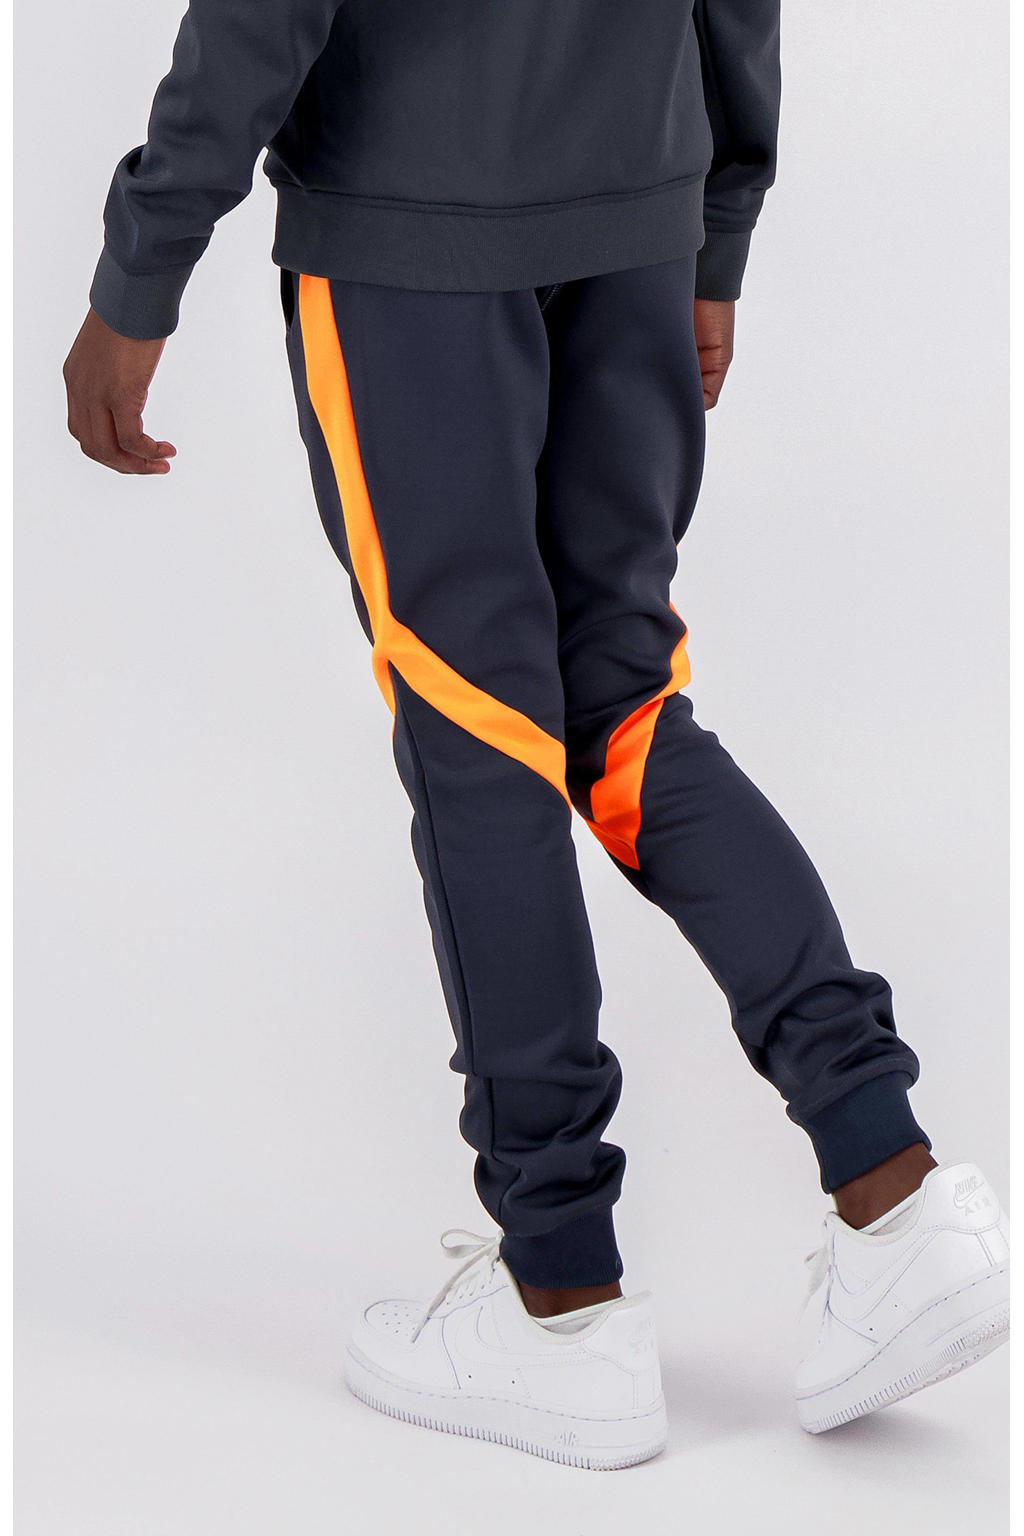 Donkerblauw en oranje jongens BLACK BANANAS slim fit broek van polyester met regular waist en elastische tailleband met koord